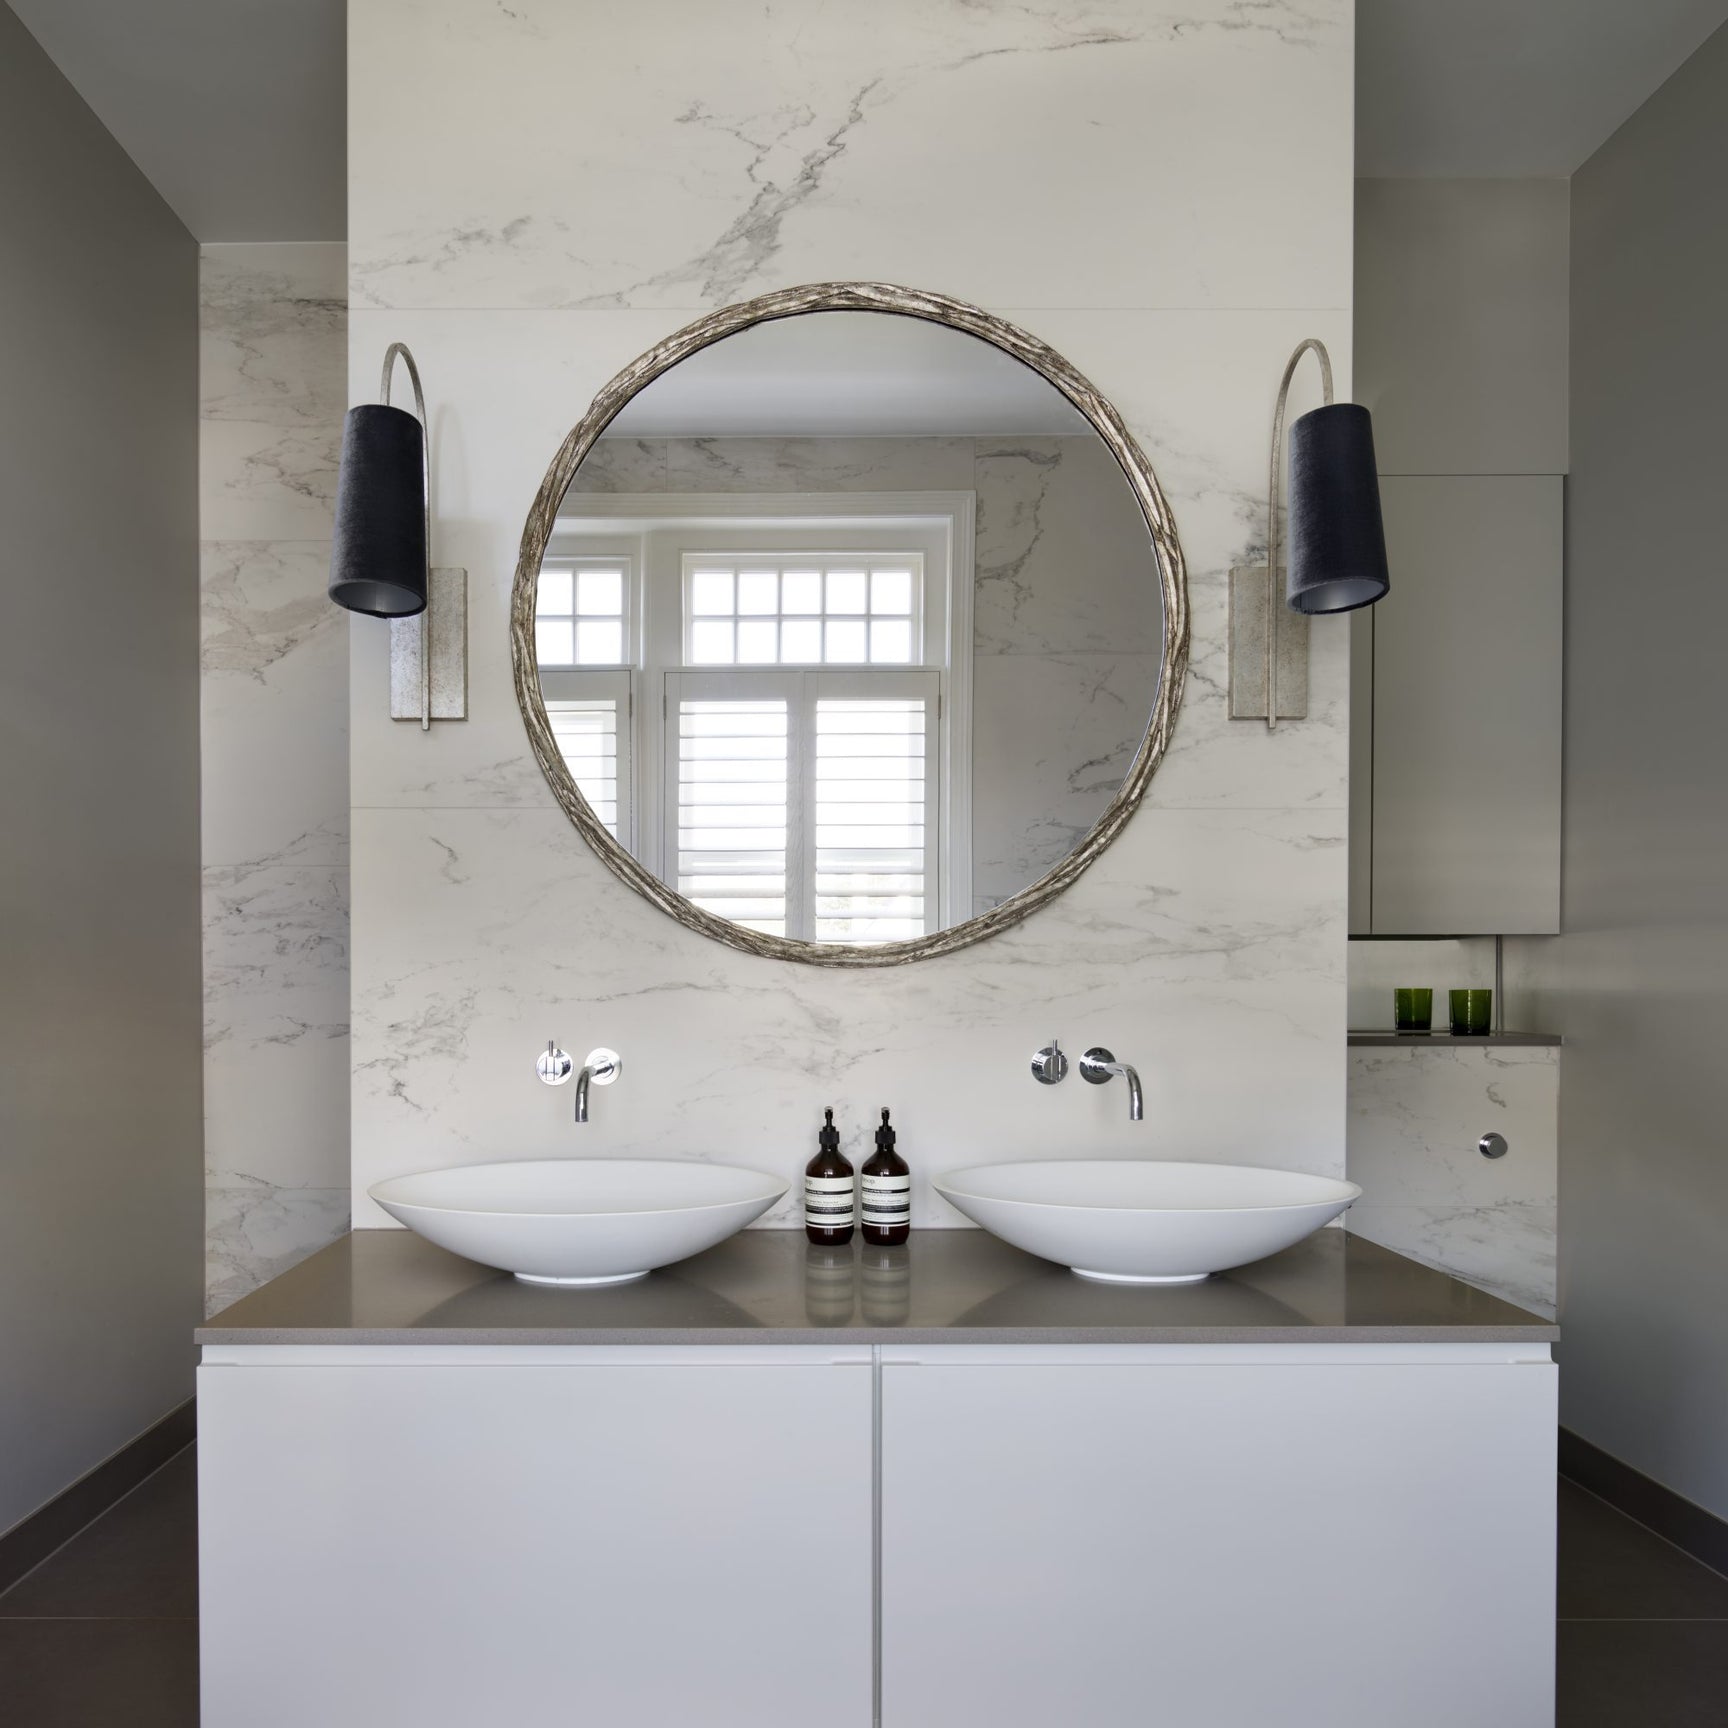 Porta Romana Laurel mirror featured in Amanda Durham Interior Design